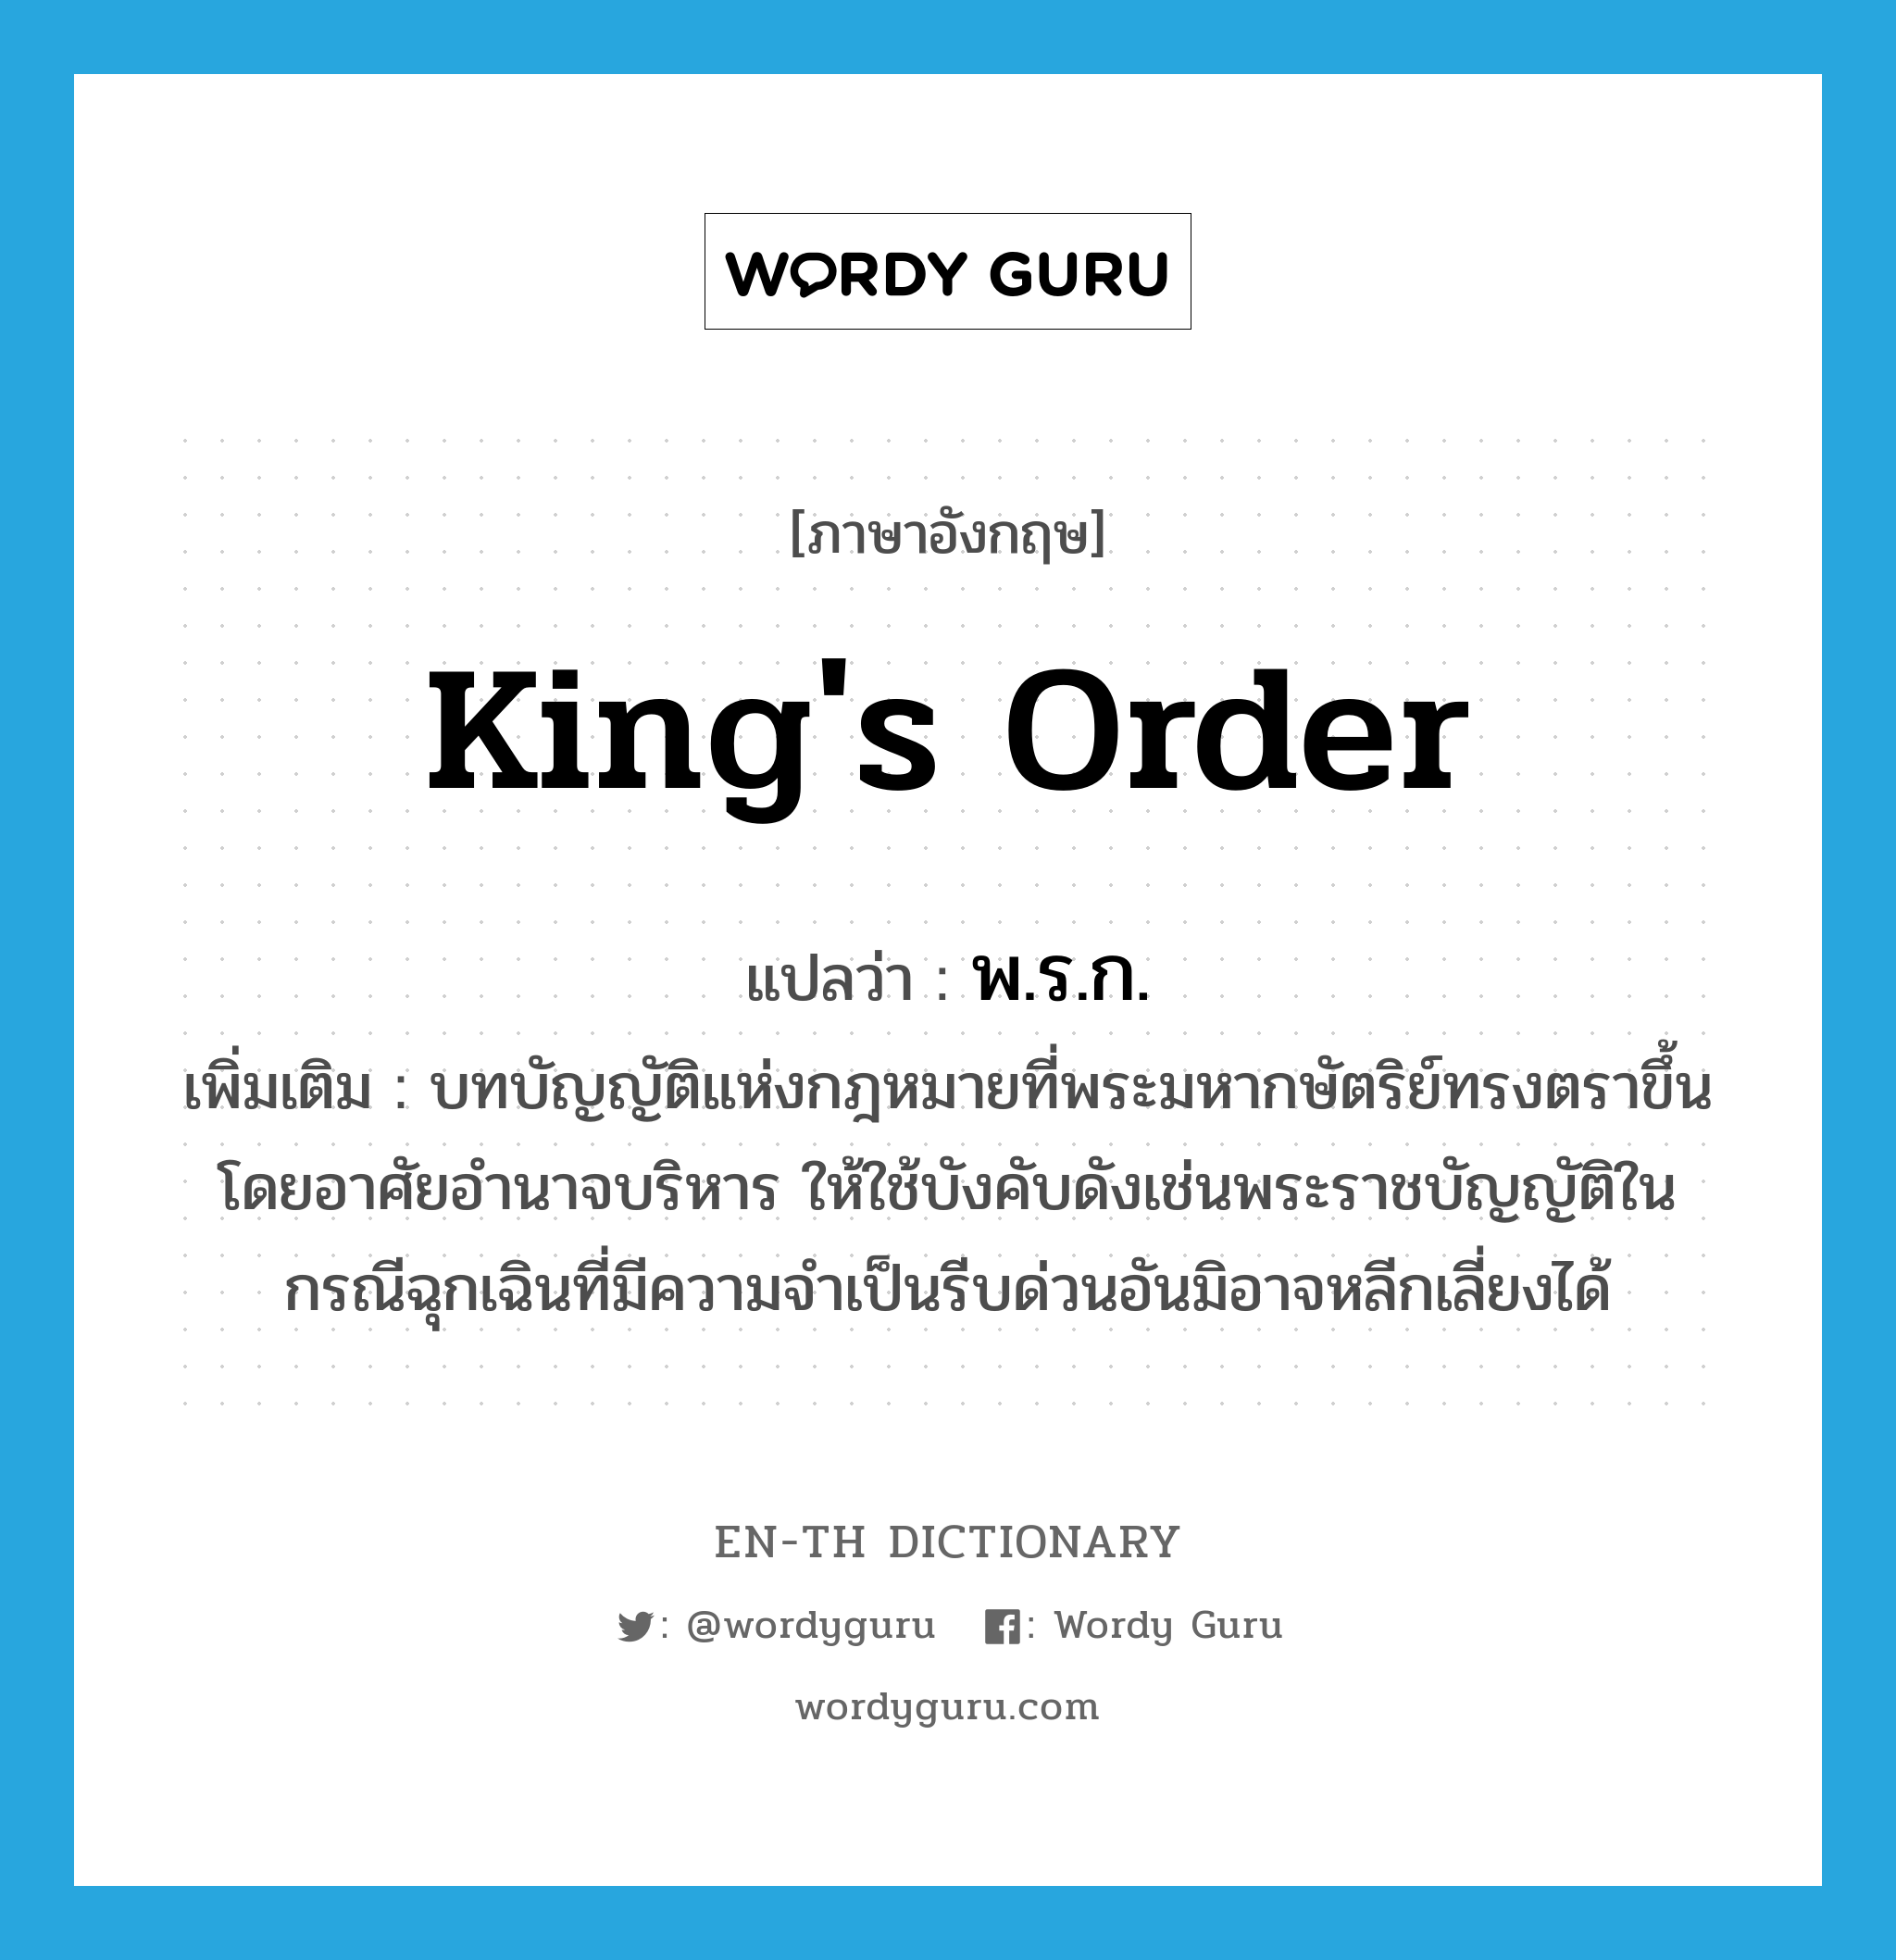 king's order แปลว่า?, คำศัพท์ภาษาอังกฤษ king's order แปลว่า พ.ร.ก. ประเภท N เพิ่มเติม บทบัญญัติแห่งกฎหมายที่พระมหากษัตริย์ทรงตราขึ้นโดยอาศัยอำนาจบริหาร ให้ใช้บังคับดังเช่นพระราชบัญญัติในกรณีฉุกเฉินที่มีความจำเป็นรีบด่วนอันมิอาจหลีกเลี่ยงได้ หมวด N